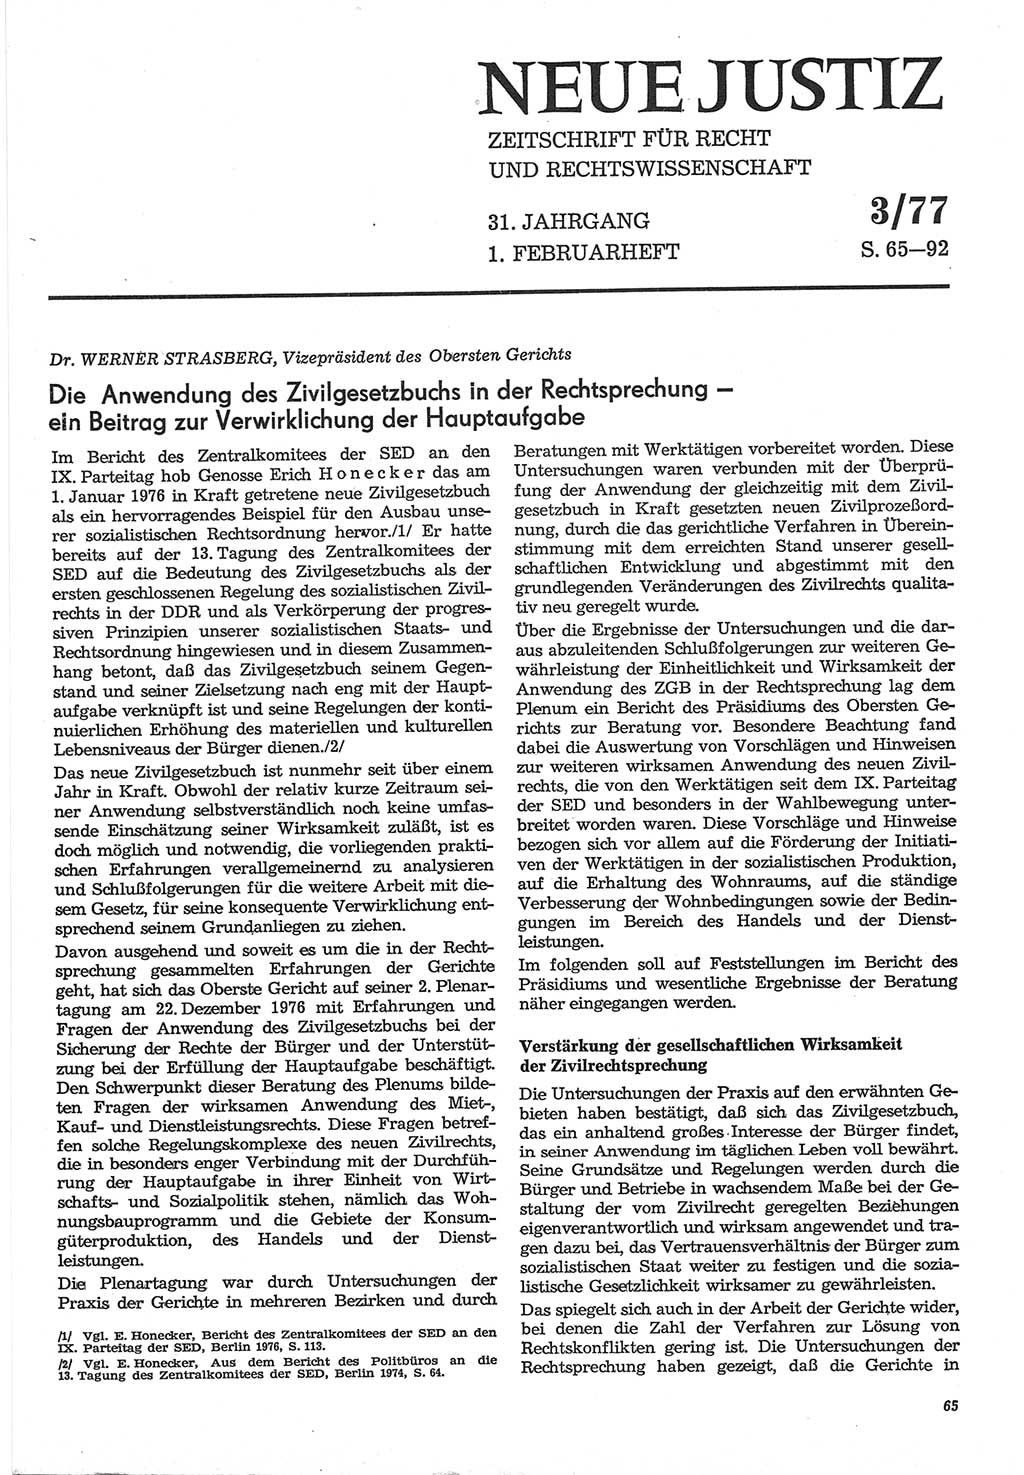 Neue Justiz (NJ), Zeitschrift für Recht und Rechtswissenschaft-Zeitschrift, sozialistisches Recht und Gesetzlichkeit, 31. Jahrgang 1977, Seite 65 (NJ DDR 1977, S. 65)